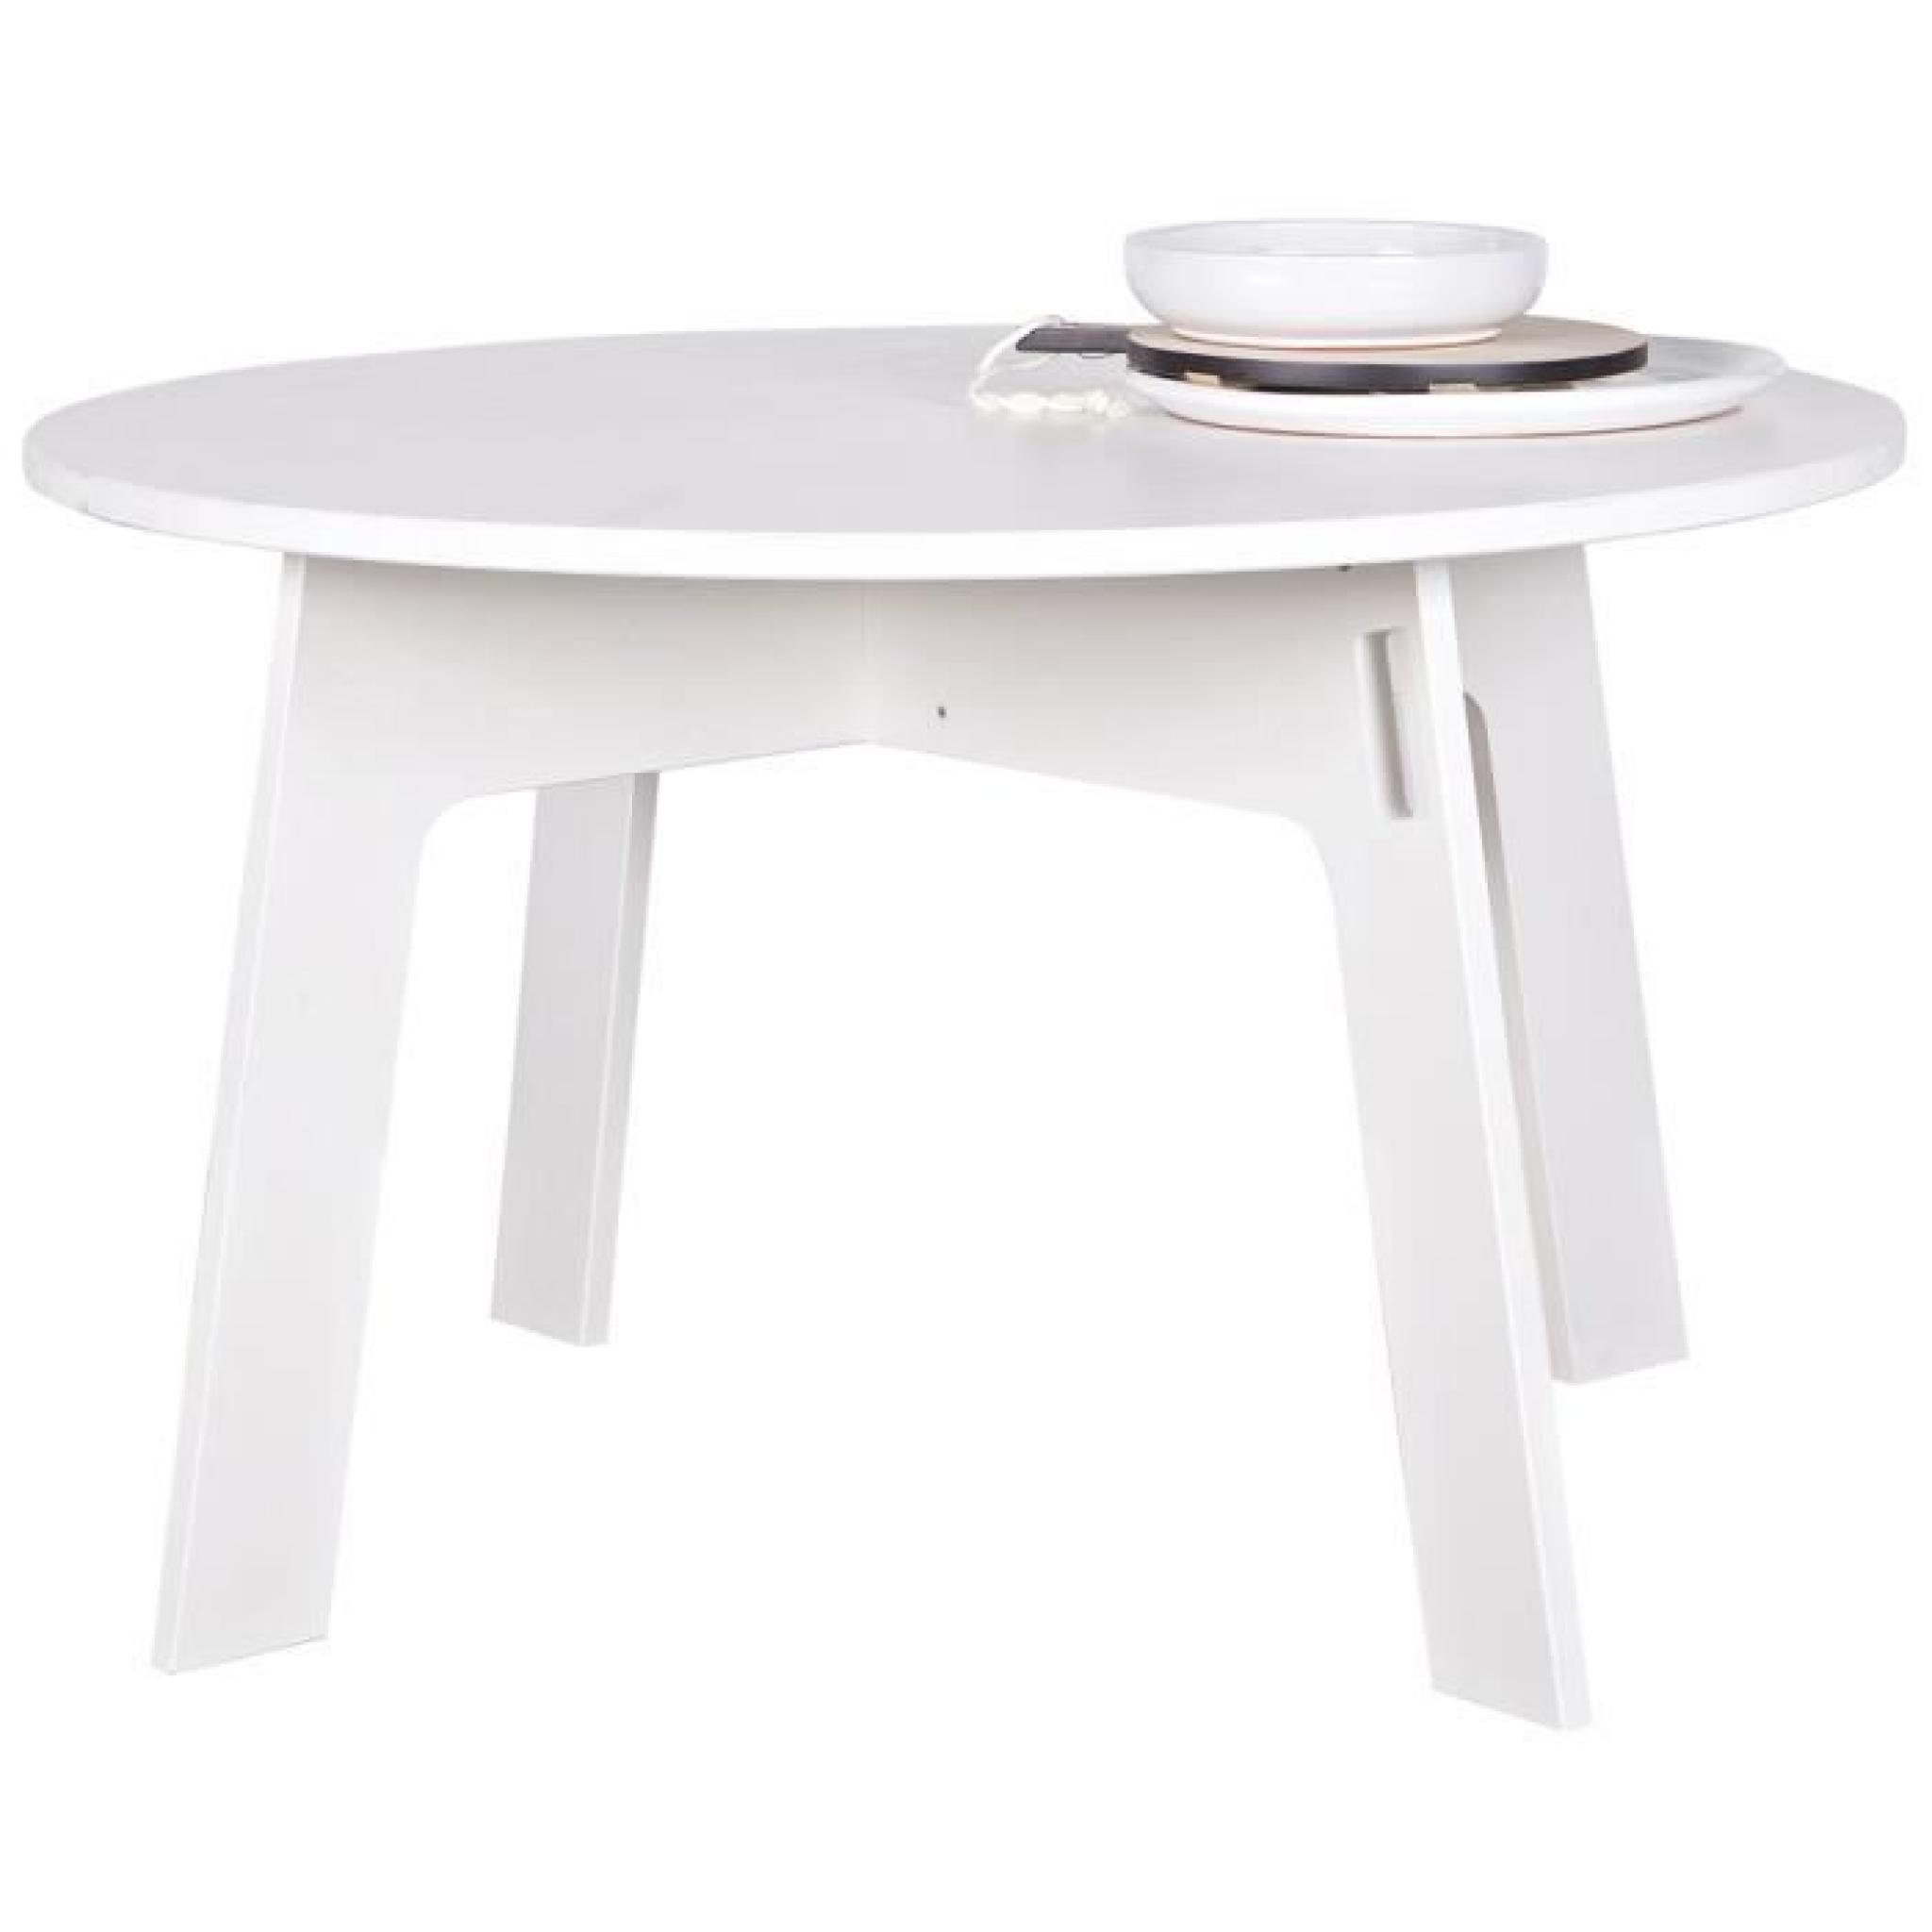 Table à manger ronde blanche, H 77 x D 129 cm pas cher